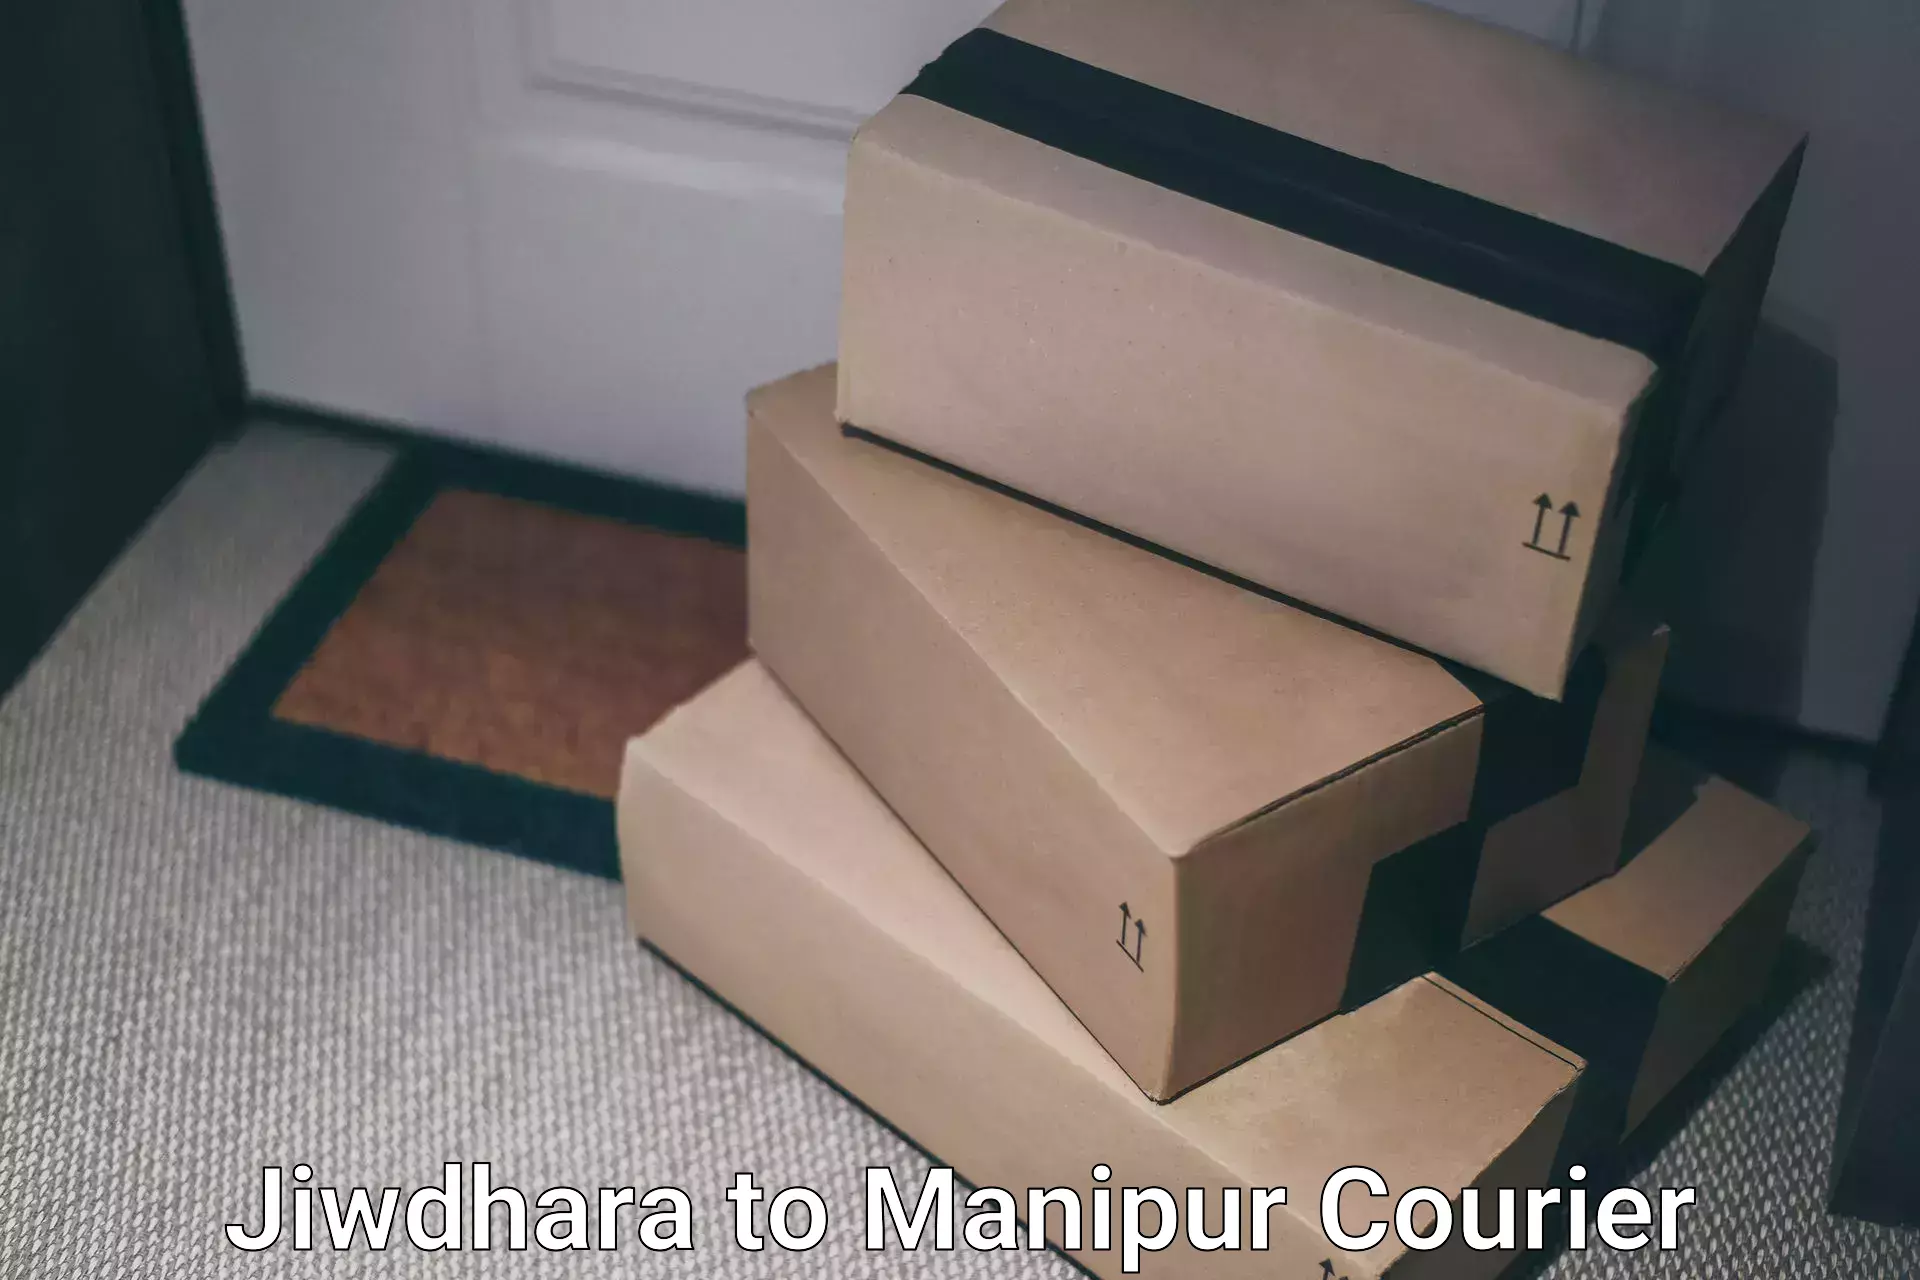 Online shipping calculator Jiwdhara to NIT Manipur